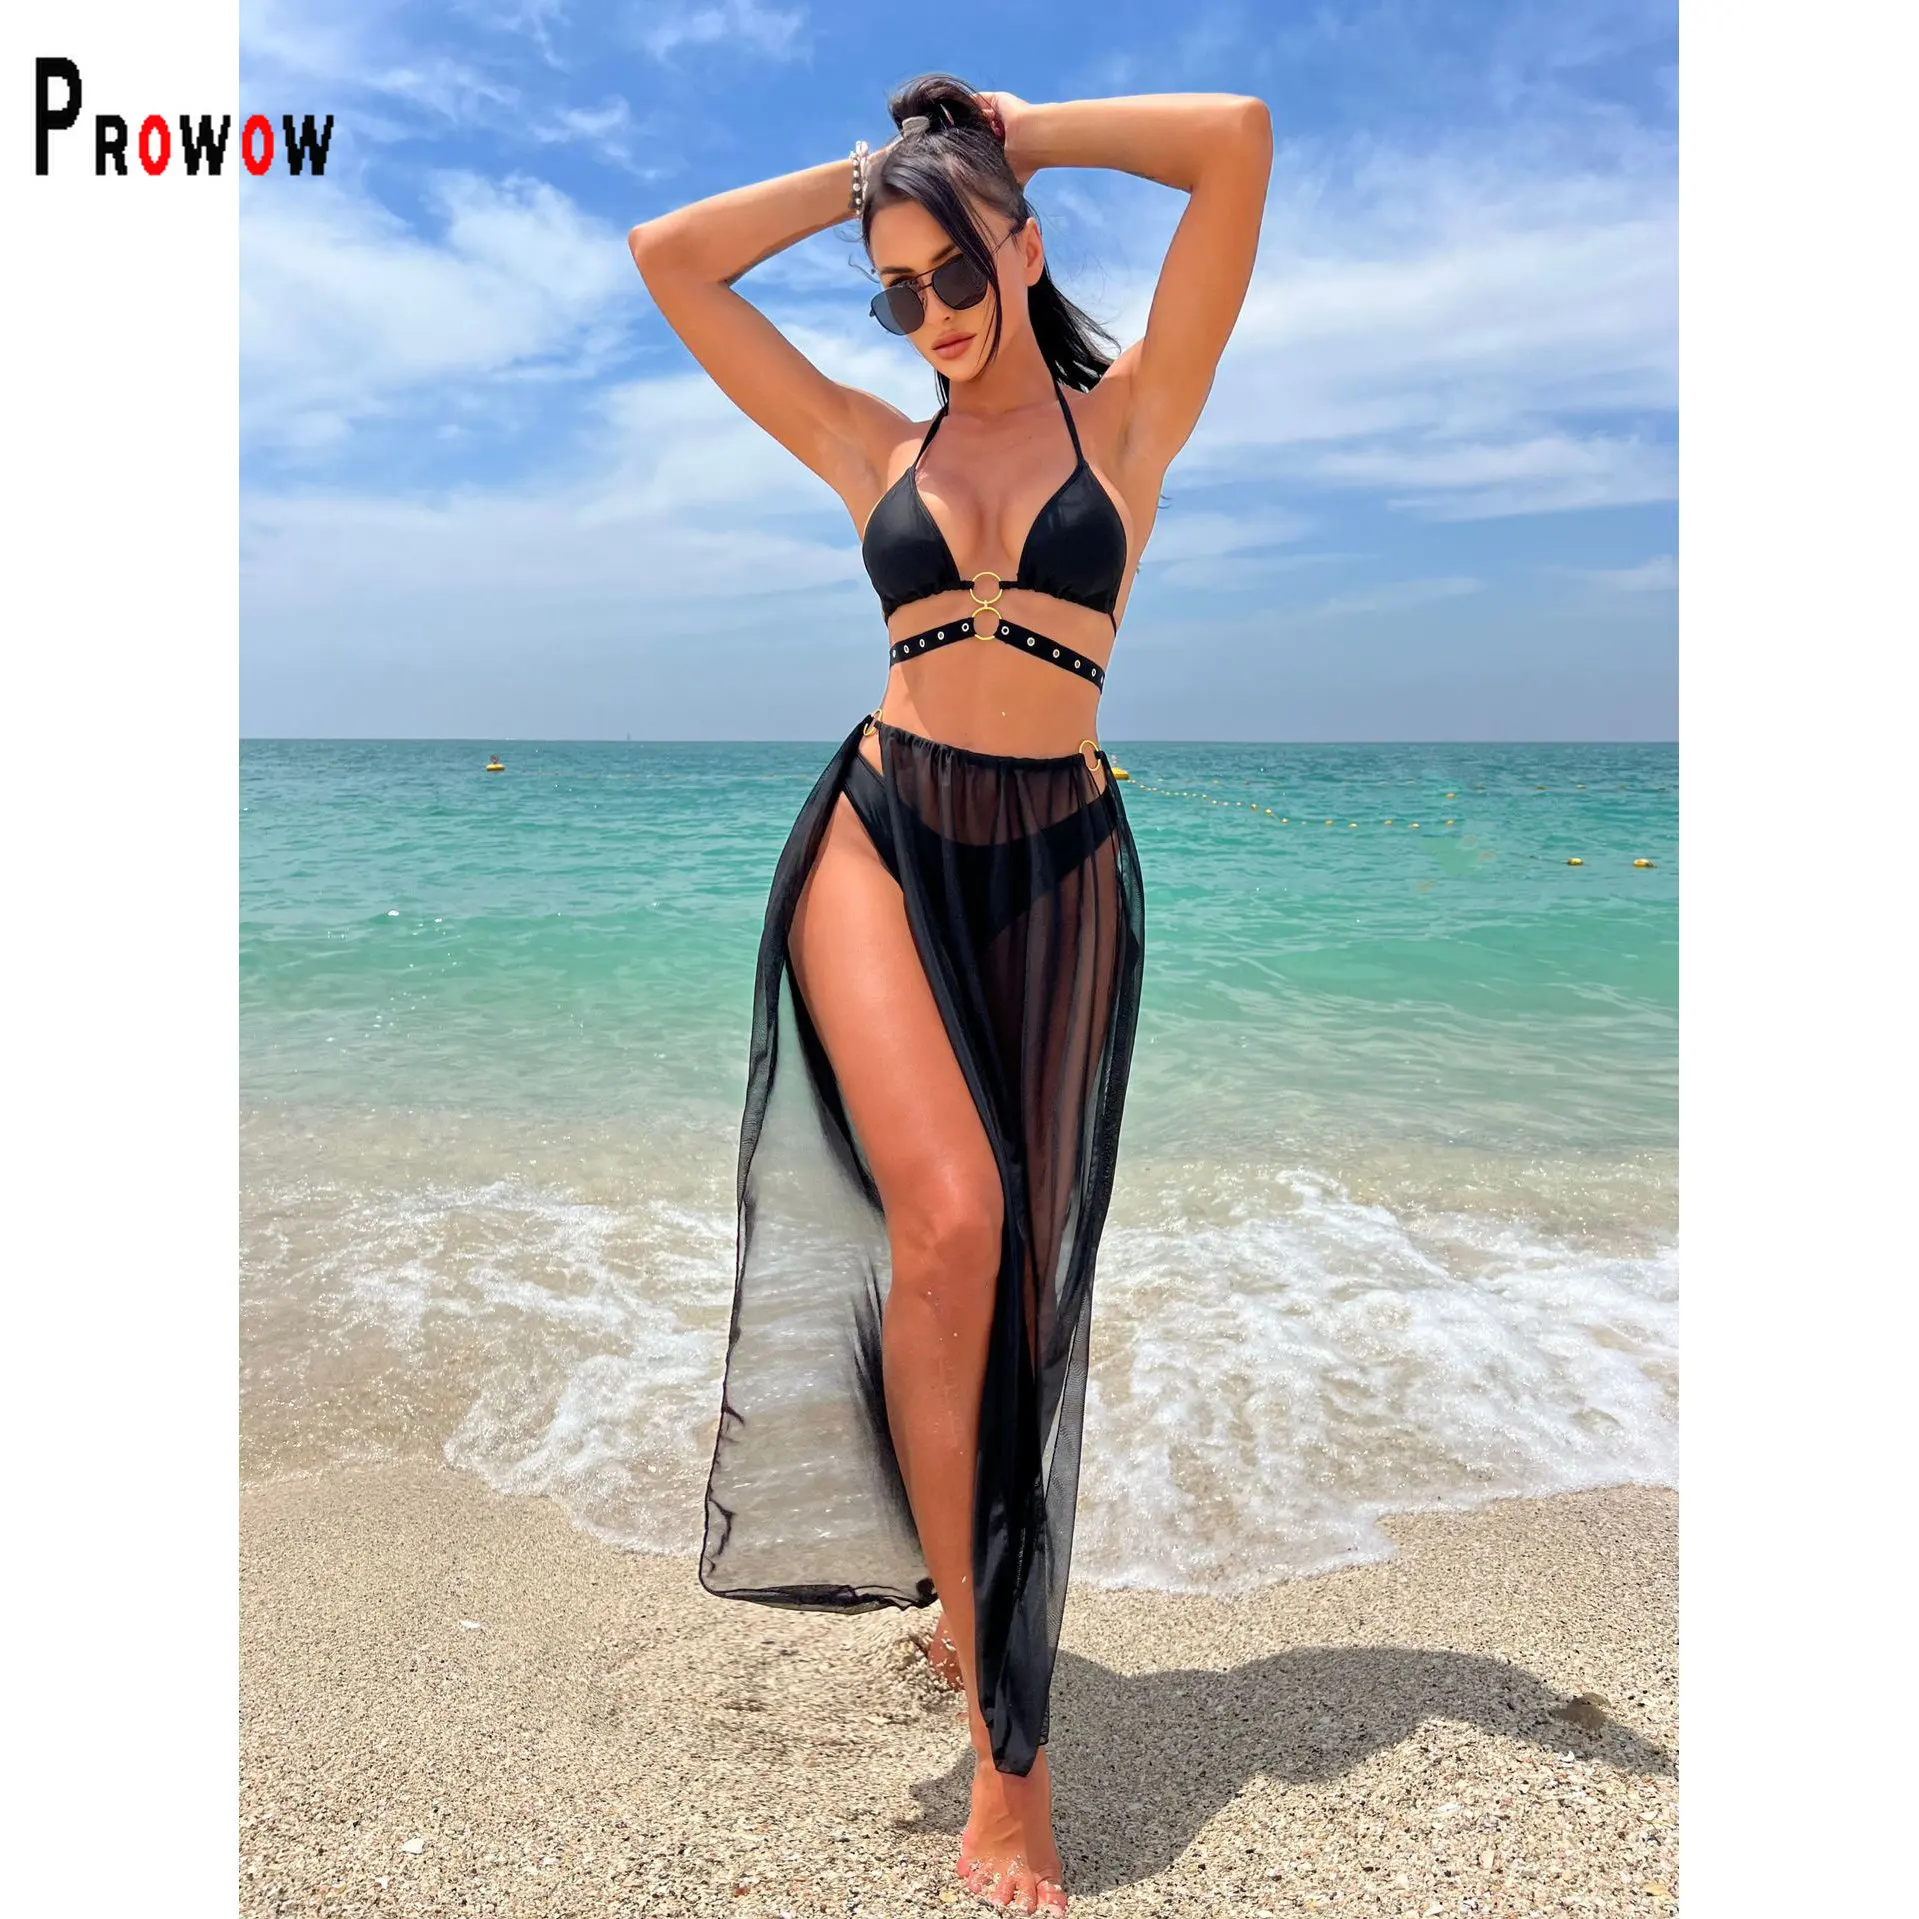 

Сексуальный черный женский комплект бикини Prowow, сетчатая накидка, юбка, купальные костюмы из трех предметов, купальные костюмы, пляжные купальники на шнуровке